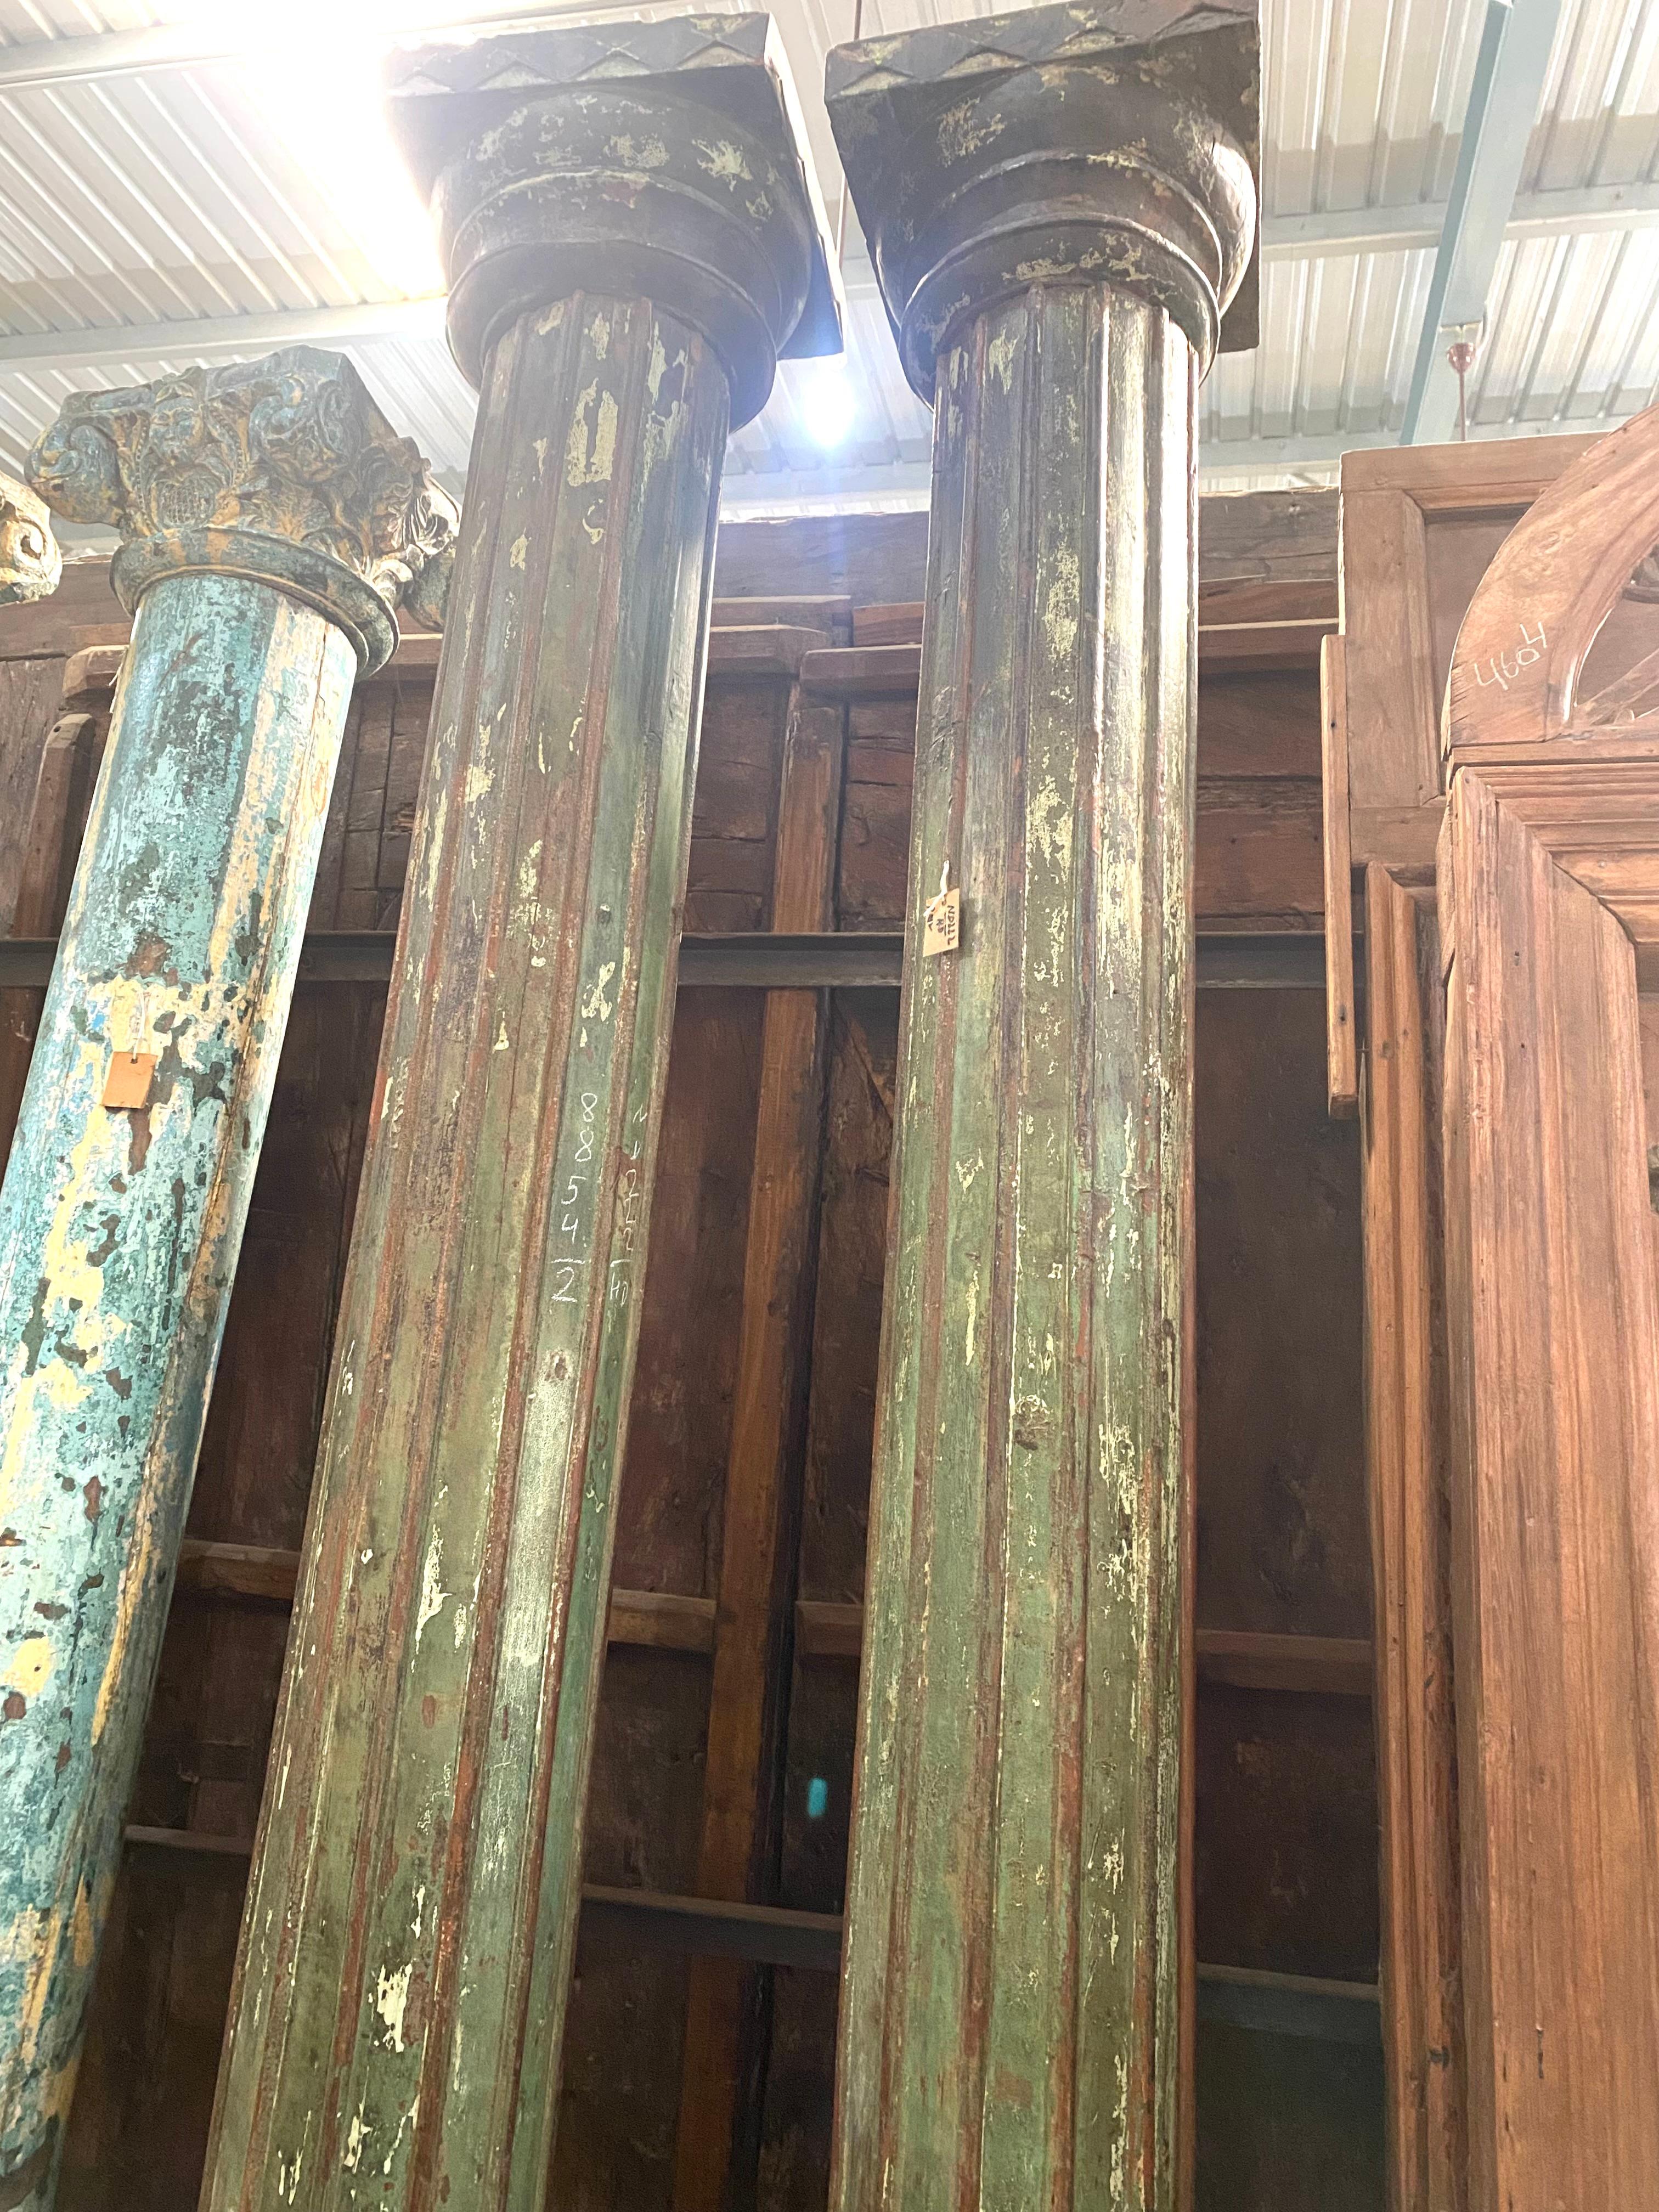 Cette extraordinaire paire de 2 colonnes est en bois de teck avec une belle patine vintage. Les chapiteaux et les bases en pierre présentent des paternes géométriques scarifiées.
Chaque colonne est composée de 3 parties pour assembler une base en